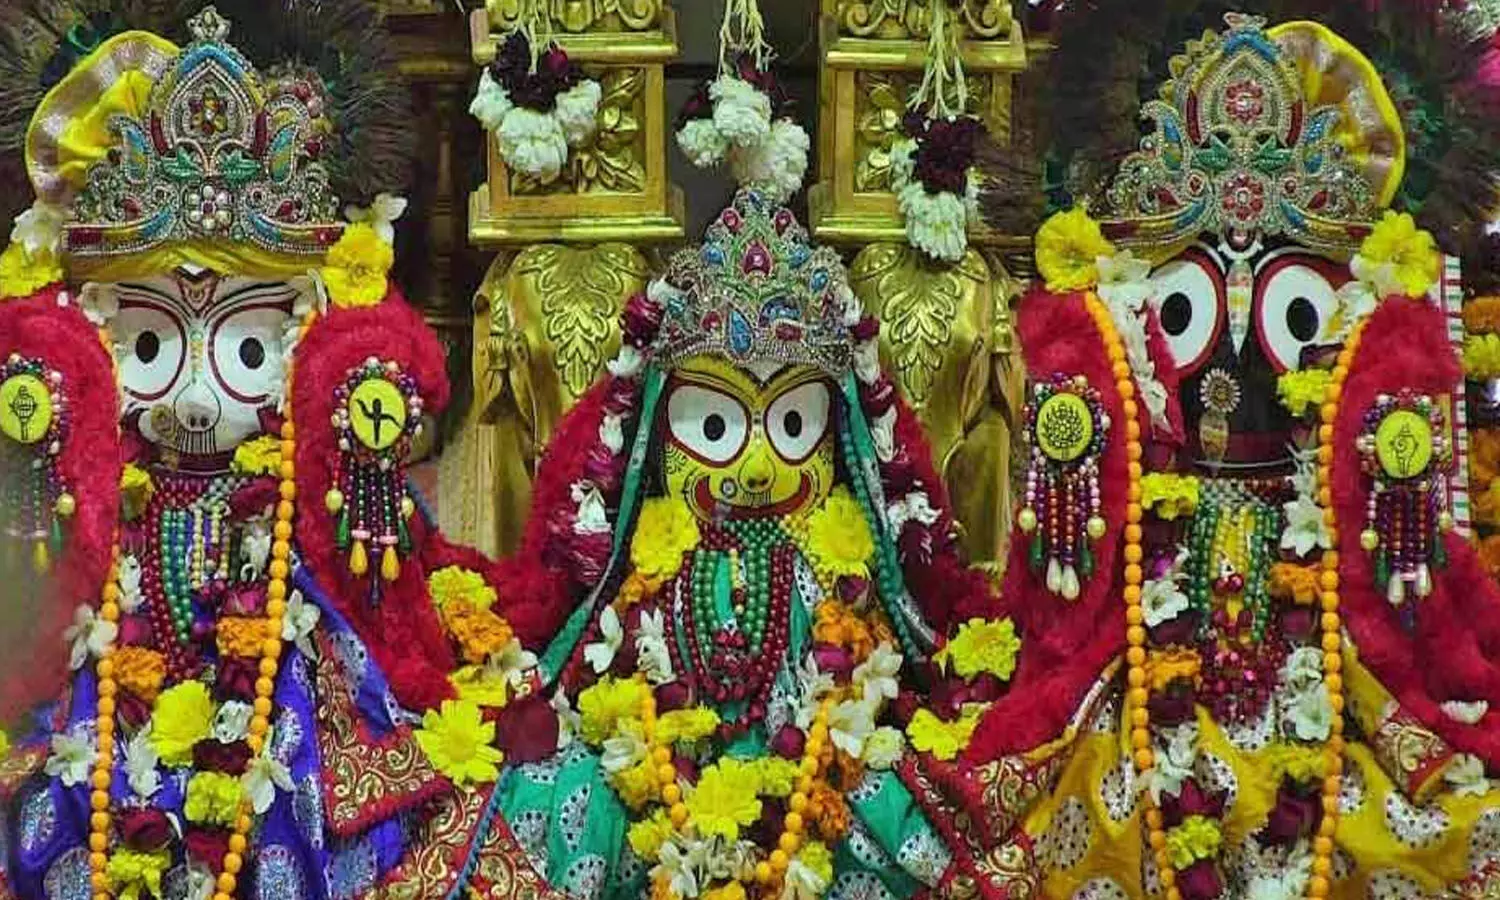 Puri Jagannath Temple Mystery : जगन्नाथ मंदिर की अधूरी मूर्तियों का रहस्य, सदियों से नहीं खुल पाया, विज्ञान भी फेल